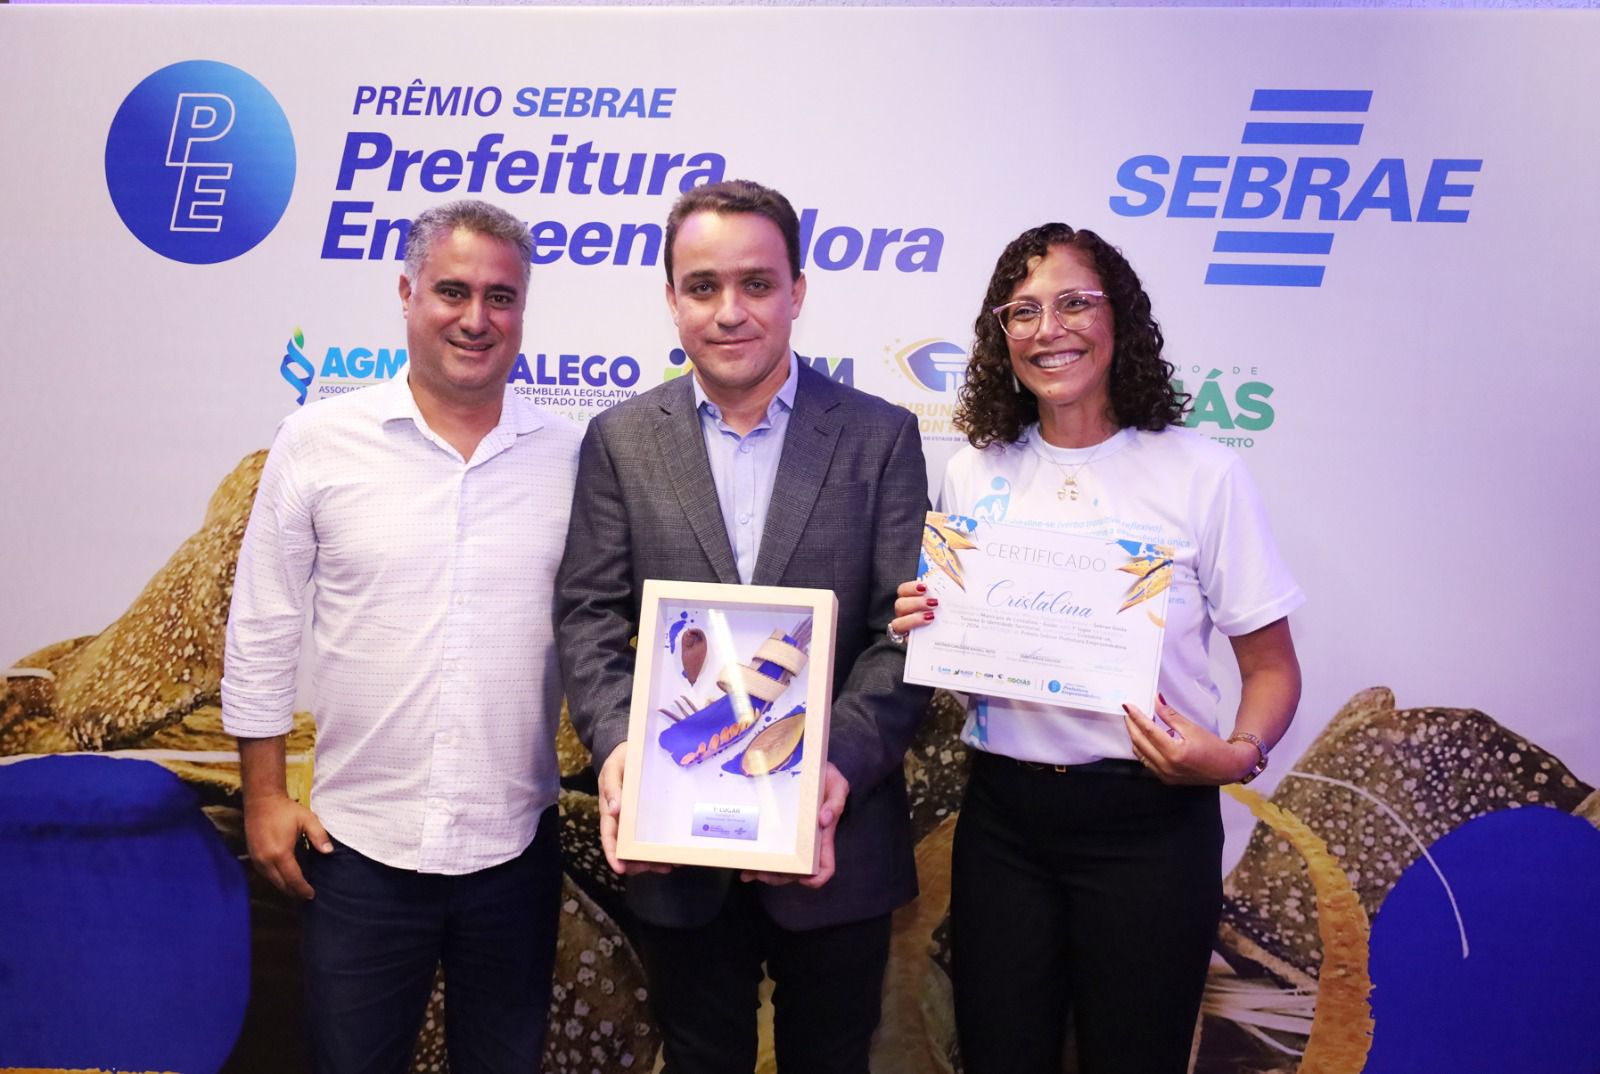 Entorno leva três prêmios dentro do “Sebrae Prefeitura Empreendedora”